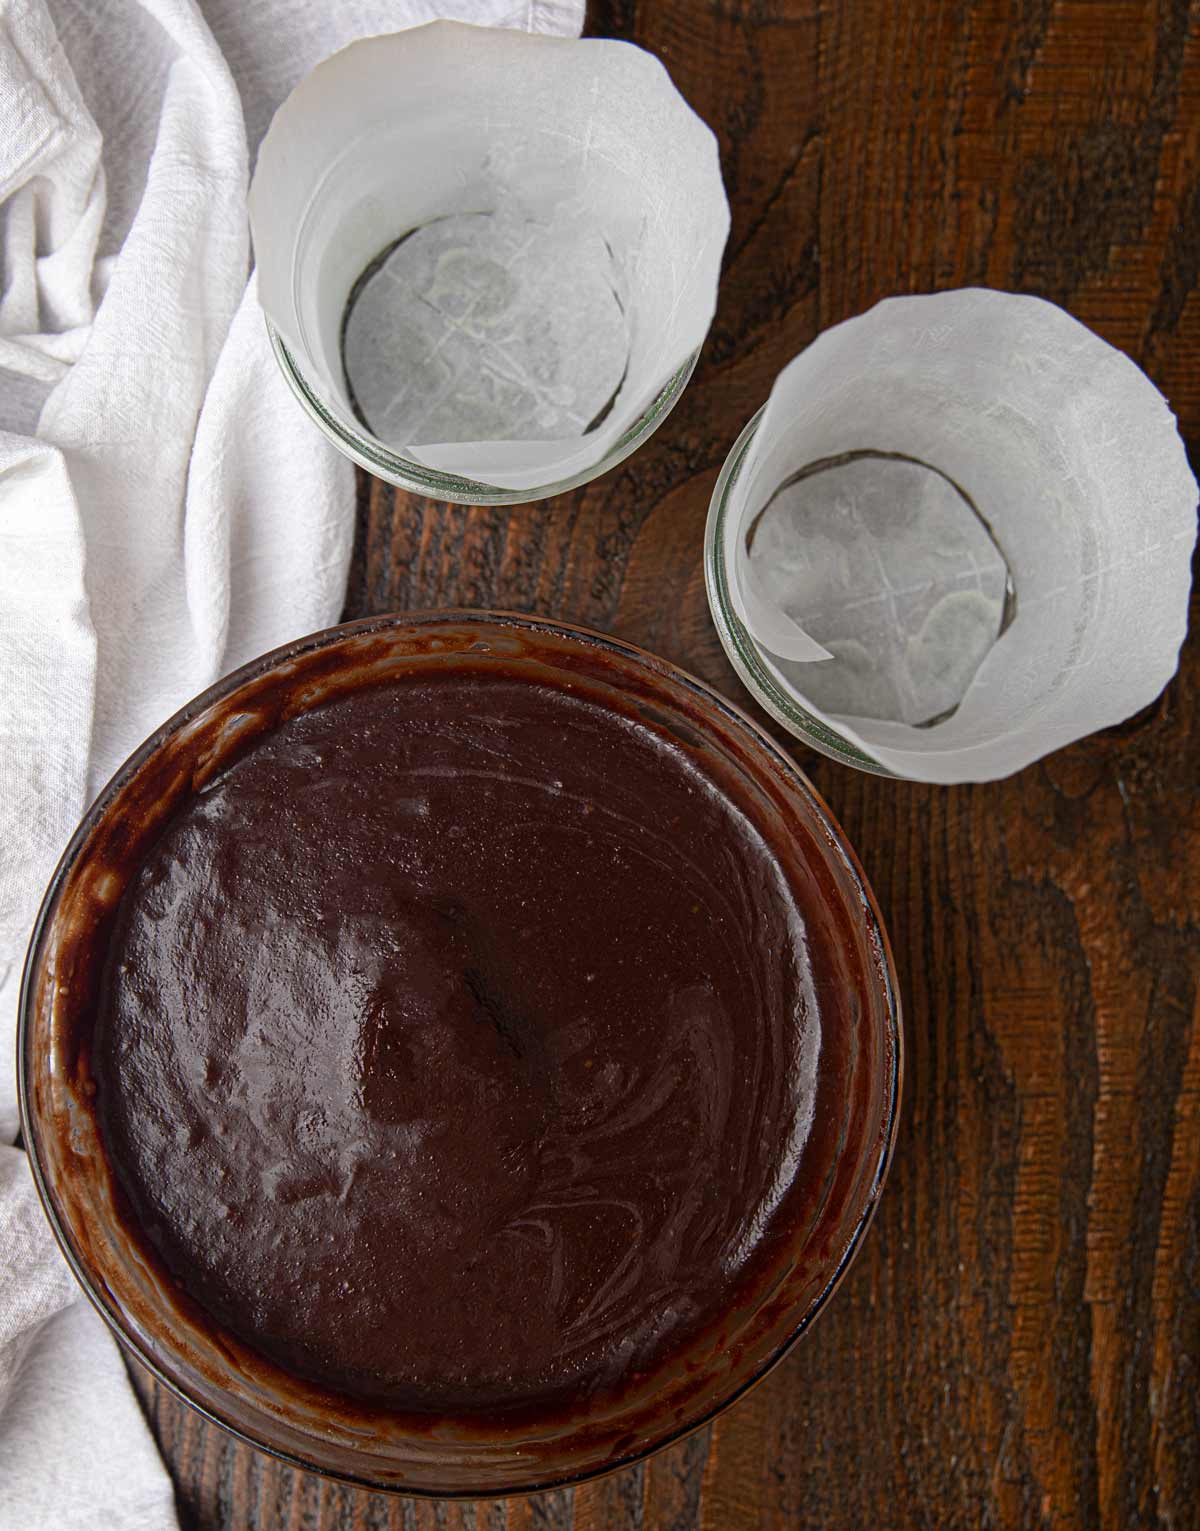 Chocolate Souffle batter